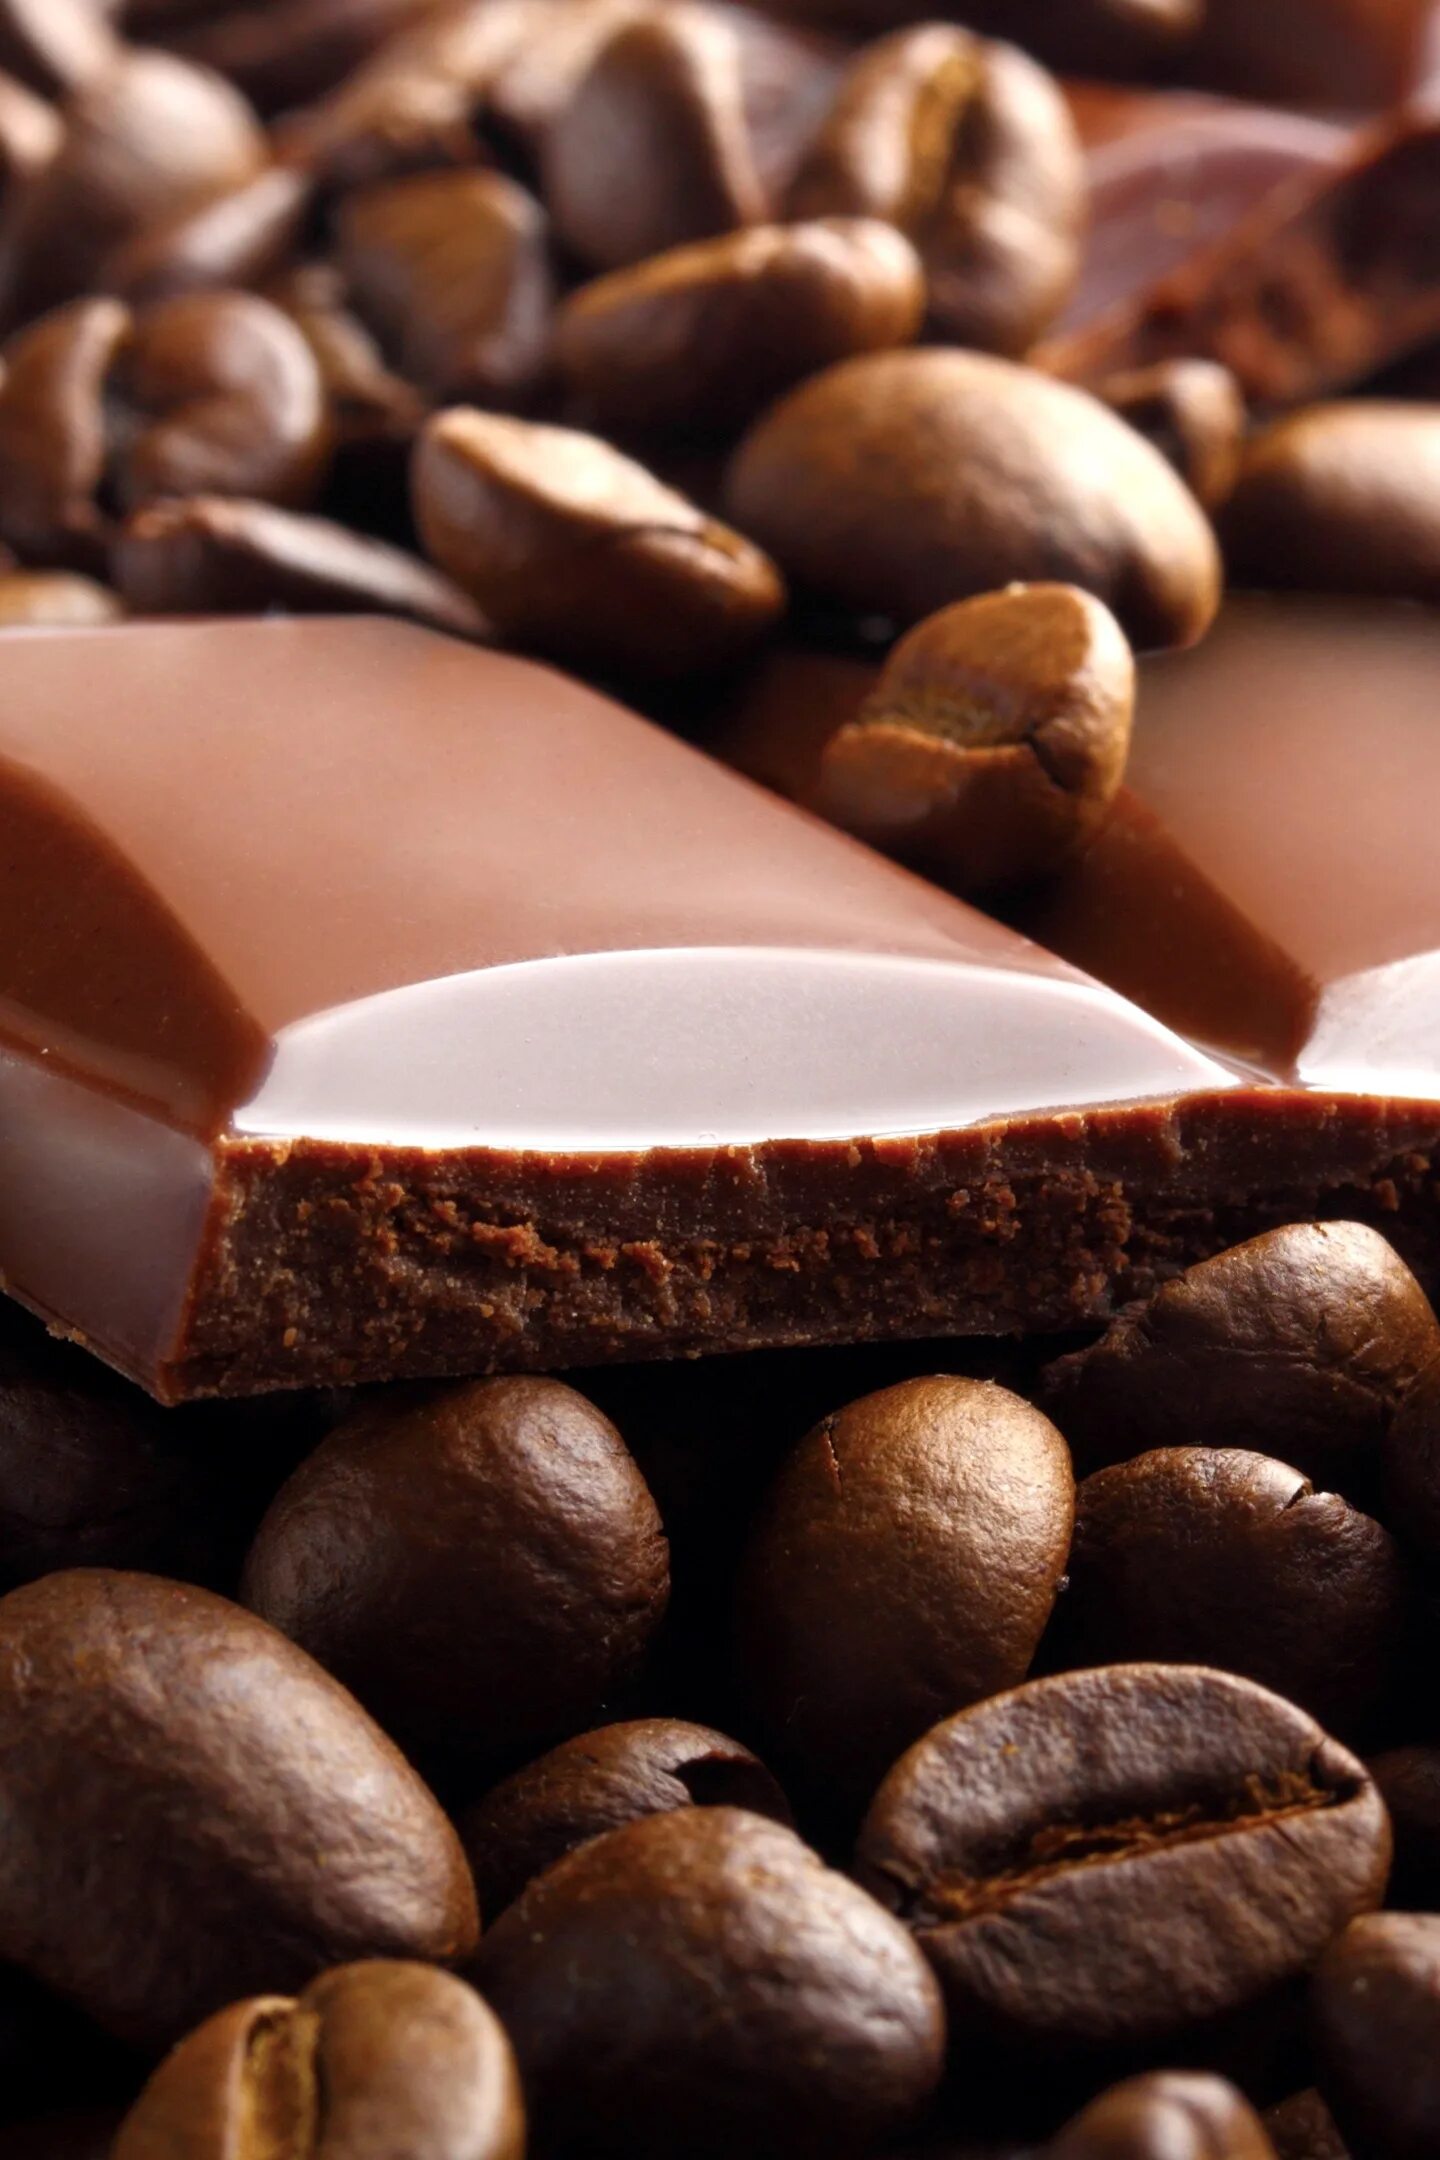 Зерна шоколада. Шоколад. Кофейные зерна в шоколаде. Кофе обои. Кофе и шоколад.